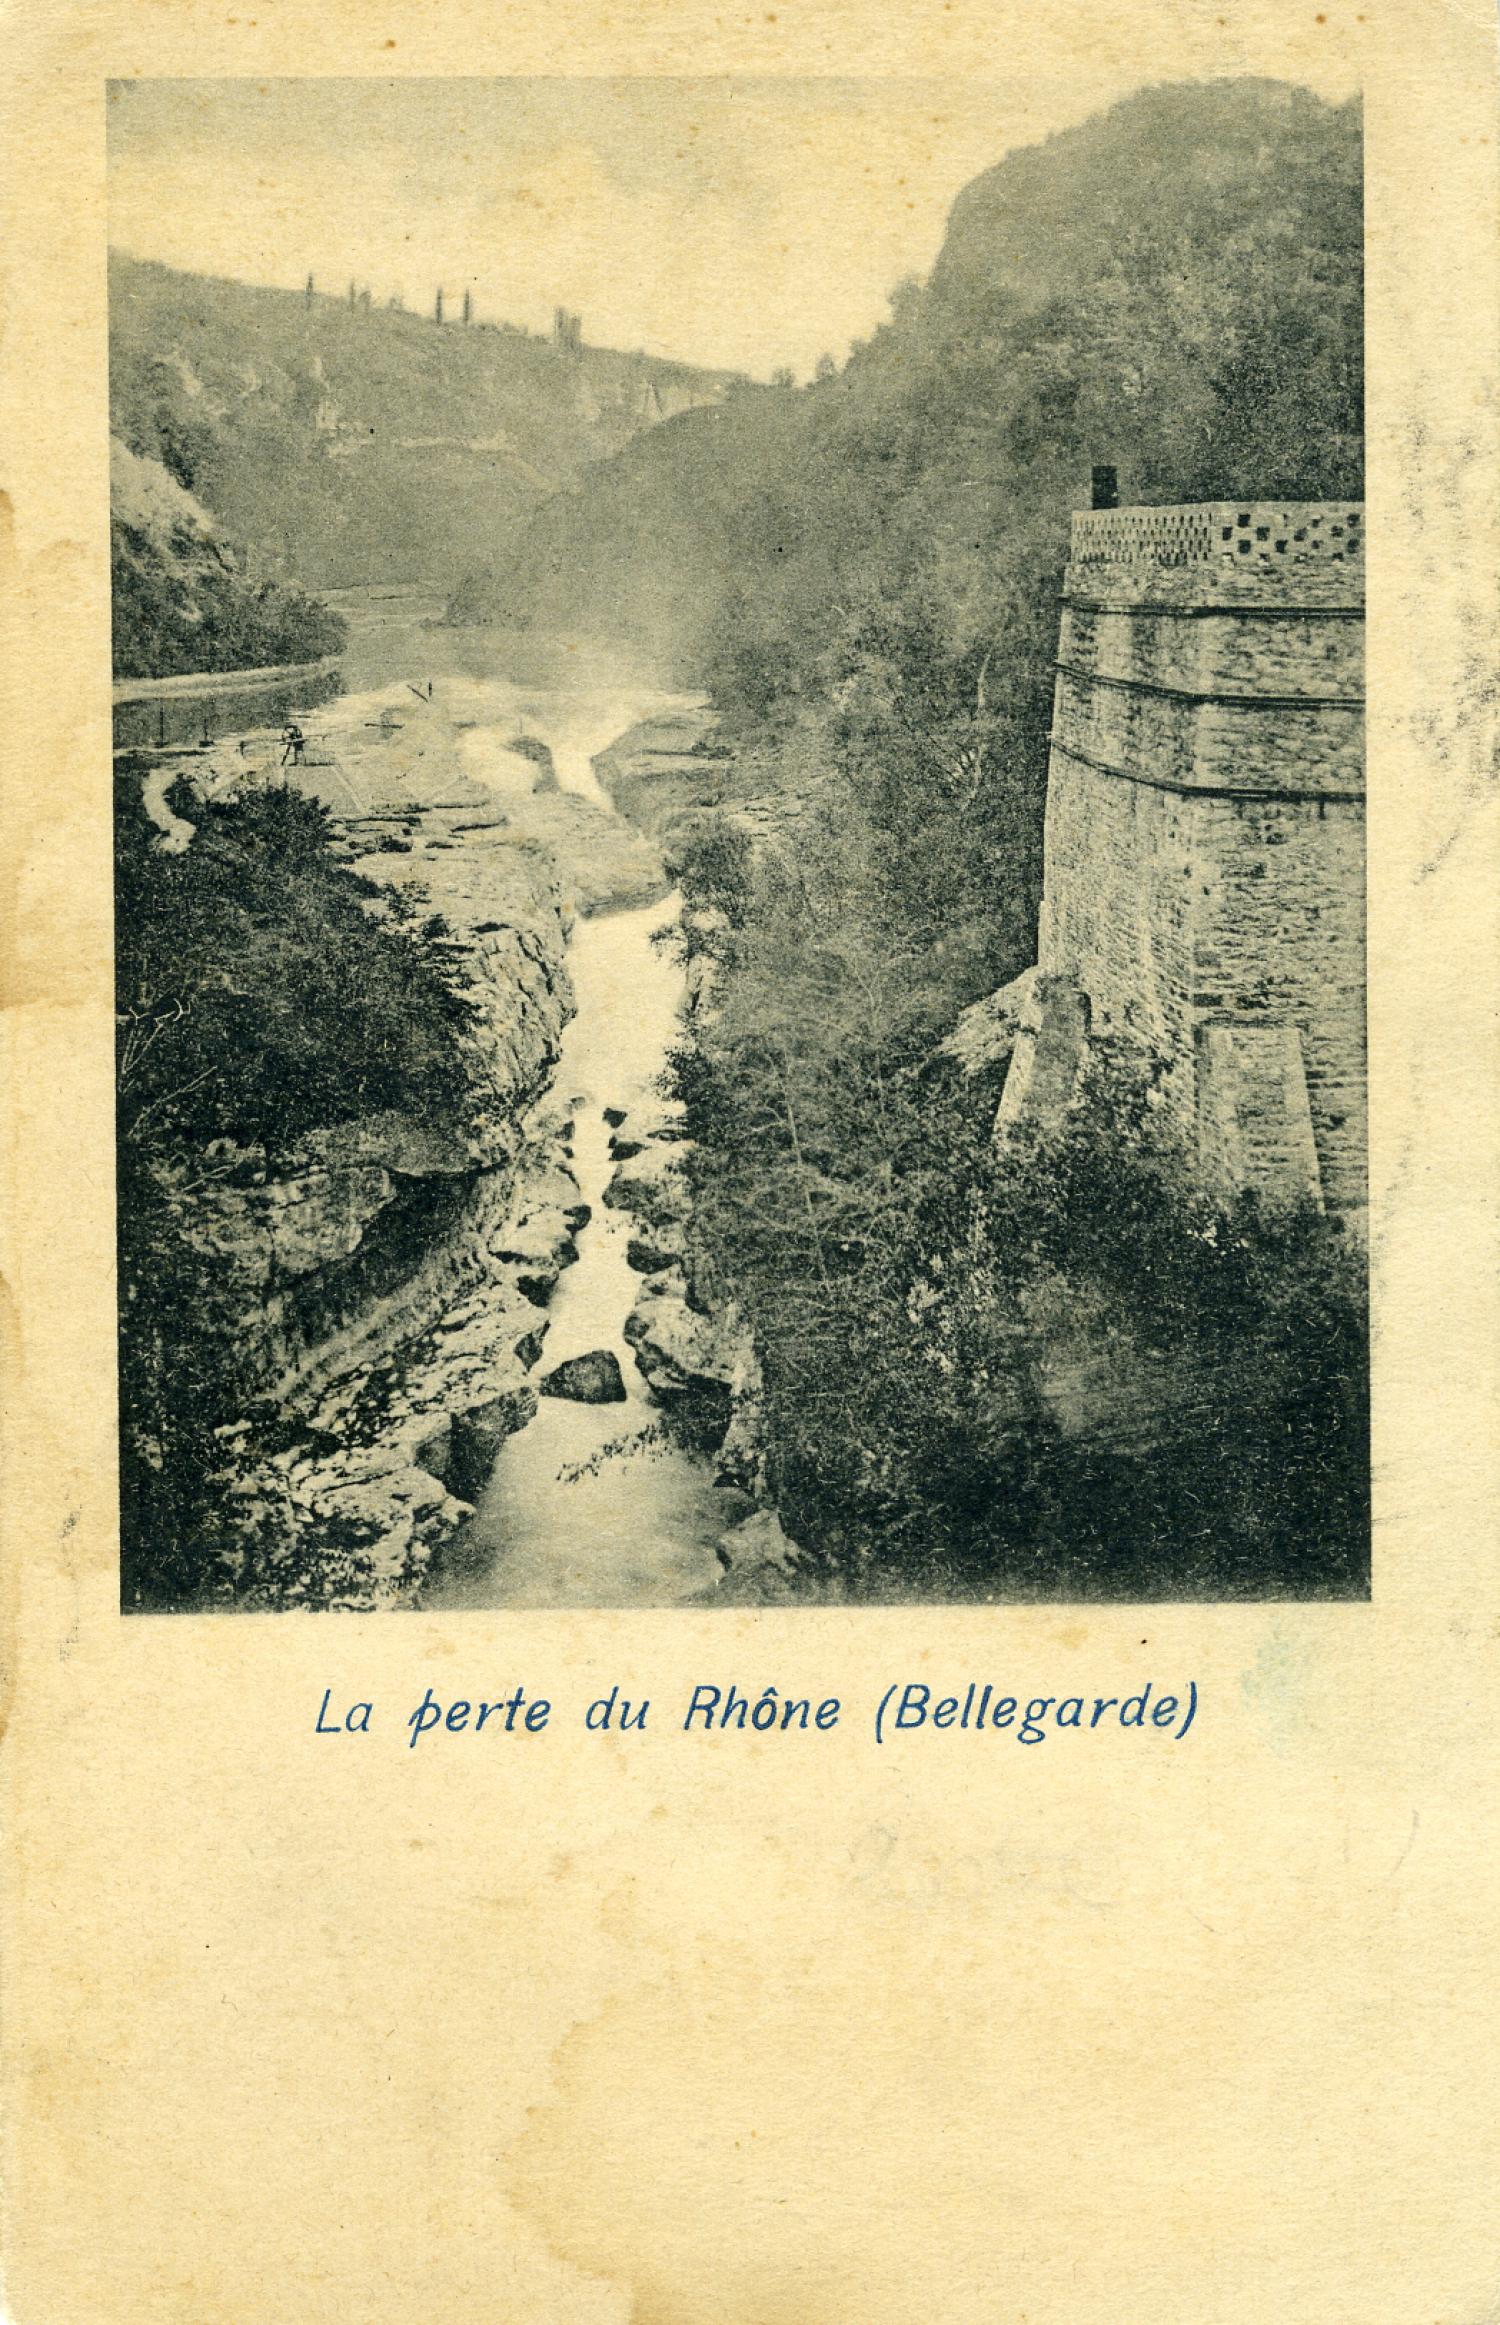 La Perte du Rhône (Bellegarde)